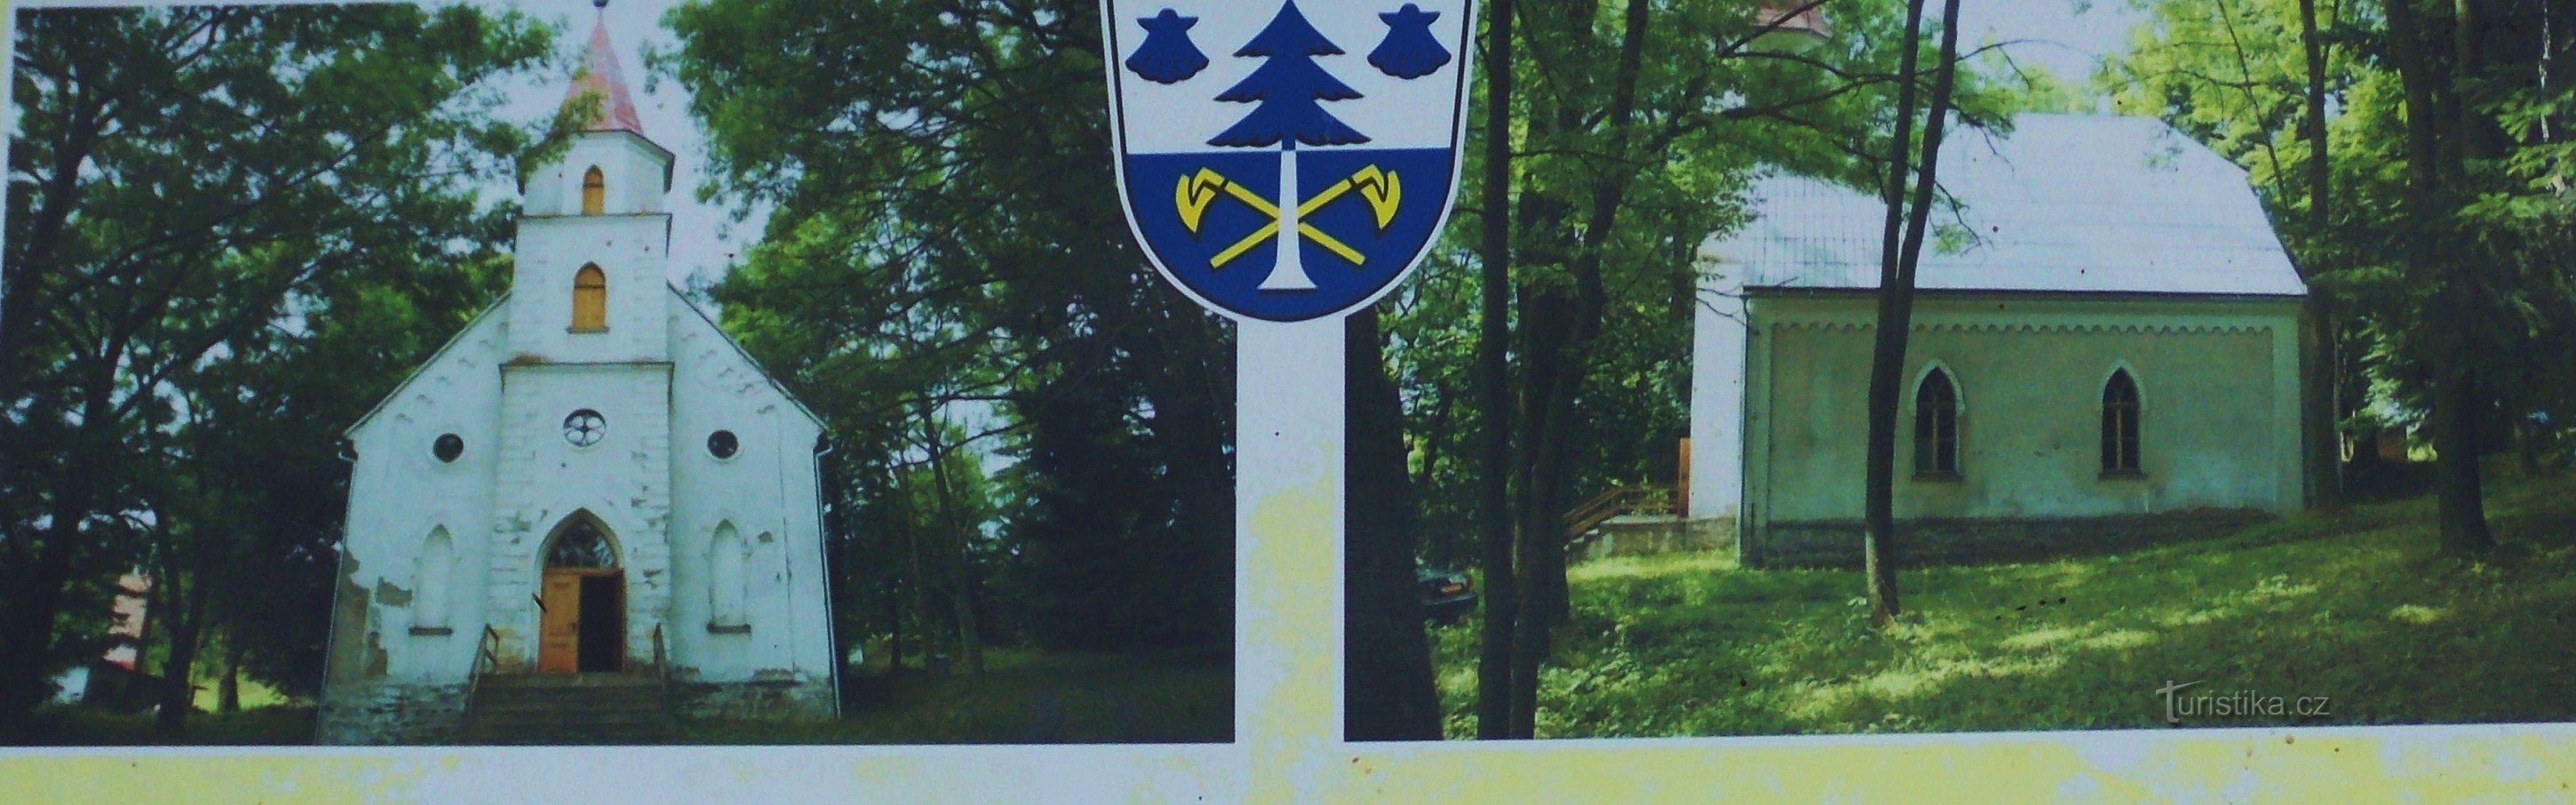 Szent Anna kápolna a Nová Ves részben - Dolní Moravice önkormányzat